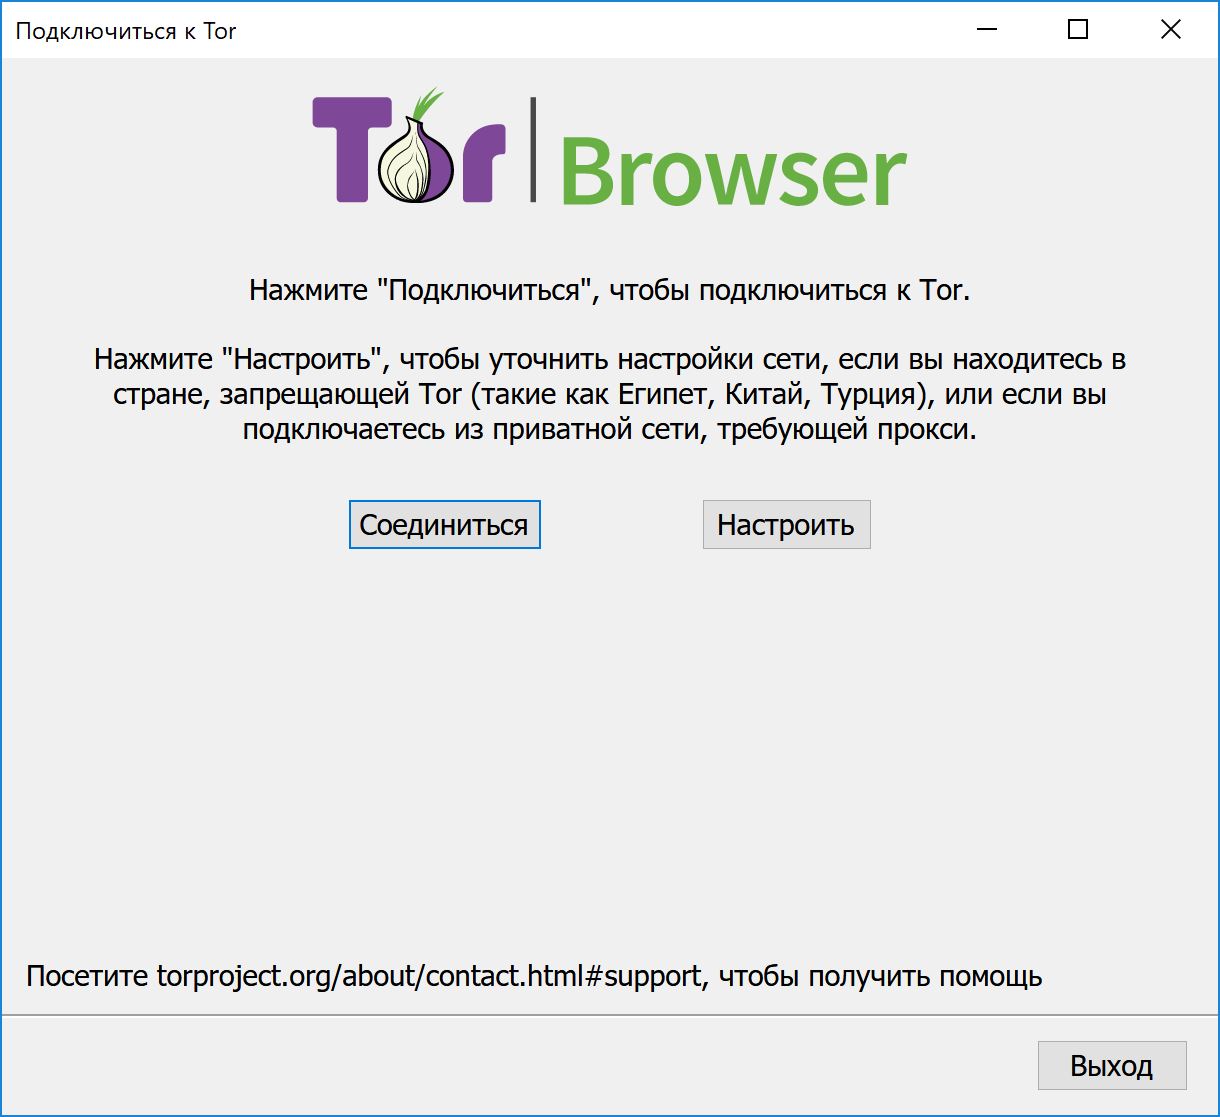 Как загрузить тор браузер бесплатно hydra2web скачать tor browser на русском бесплатно с сайта hyrda